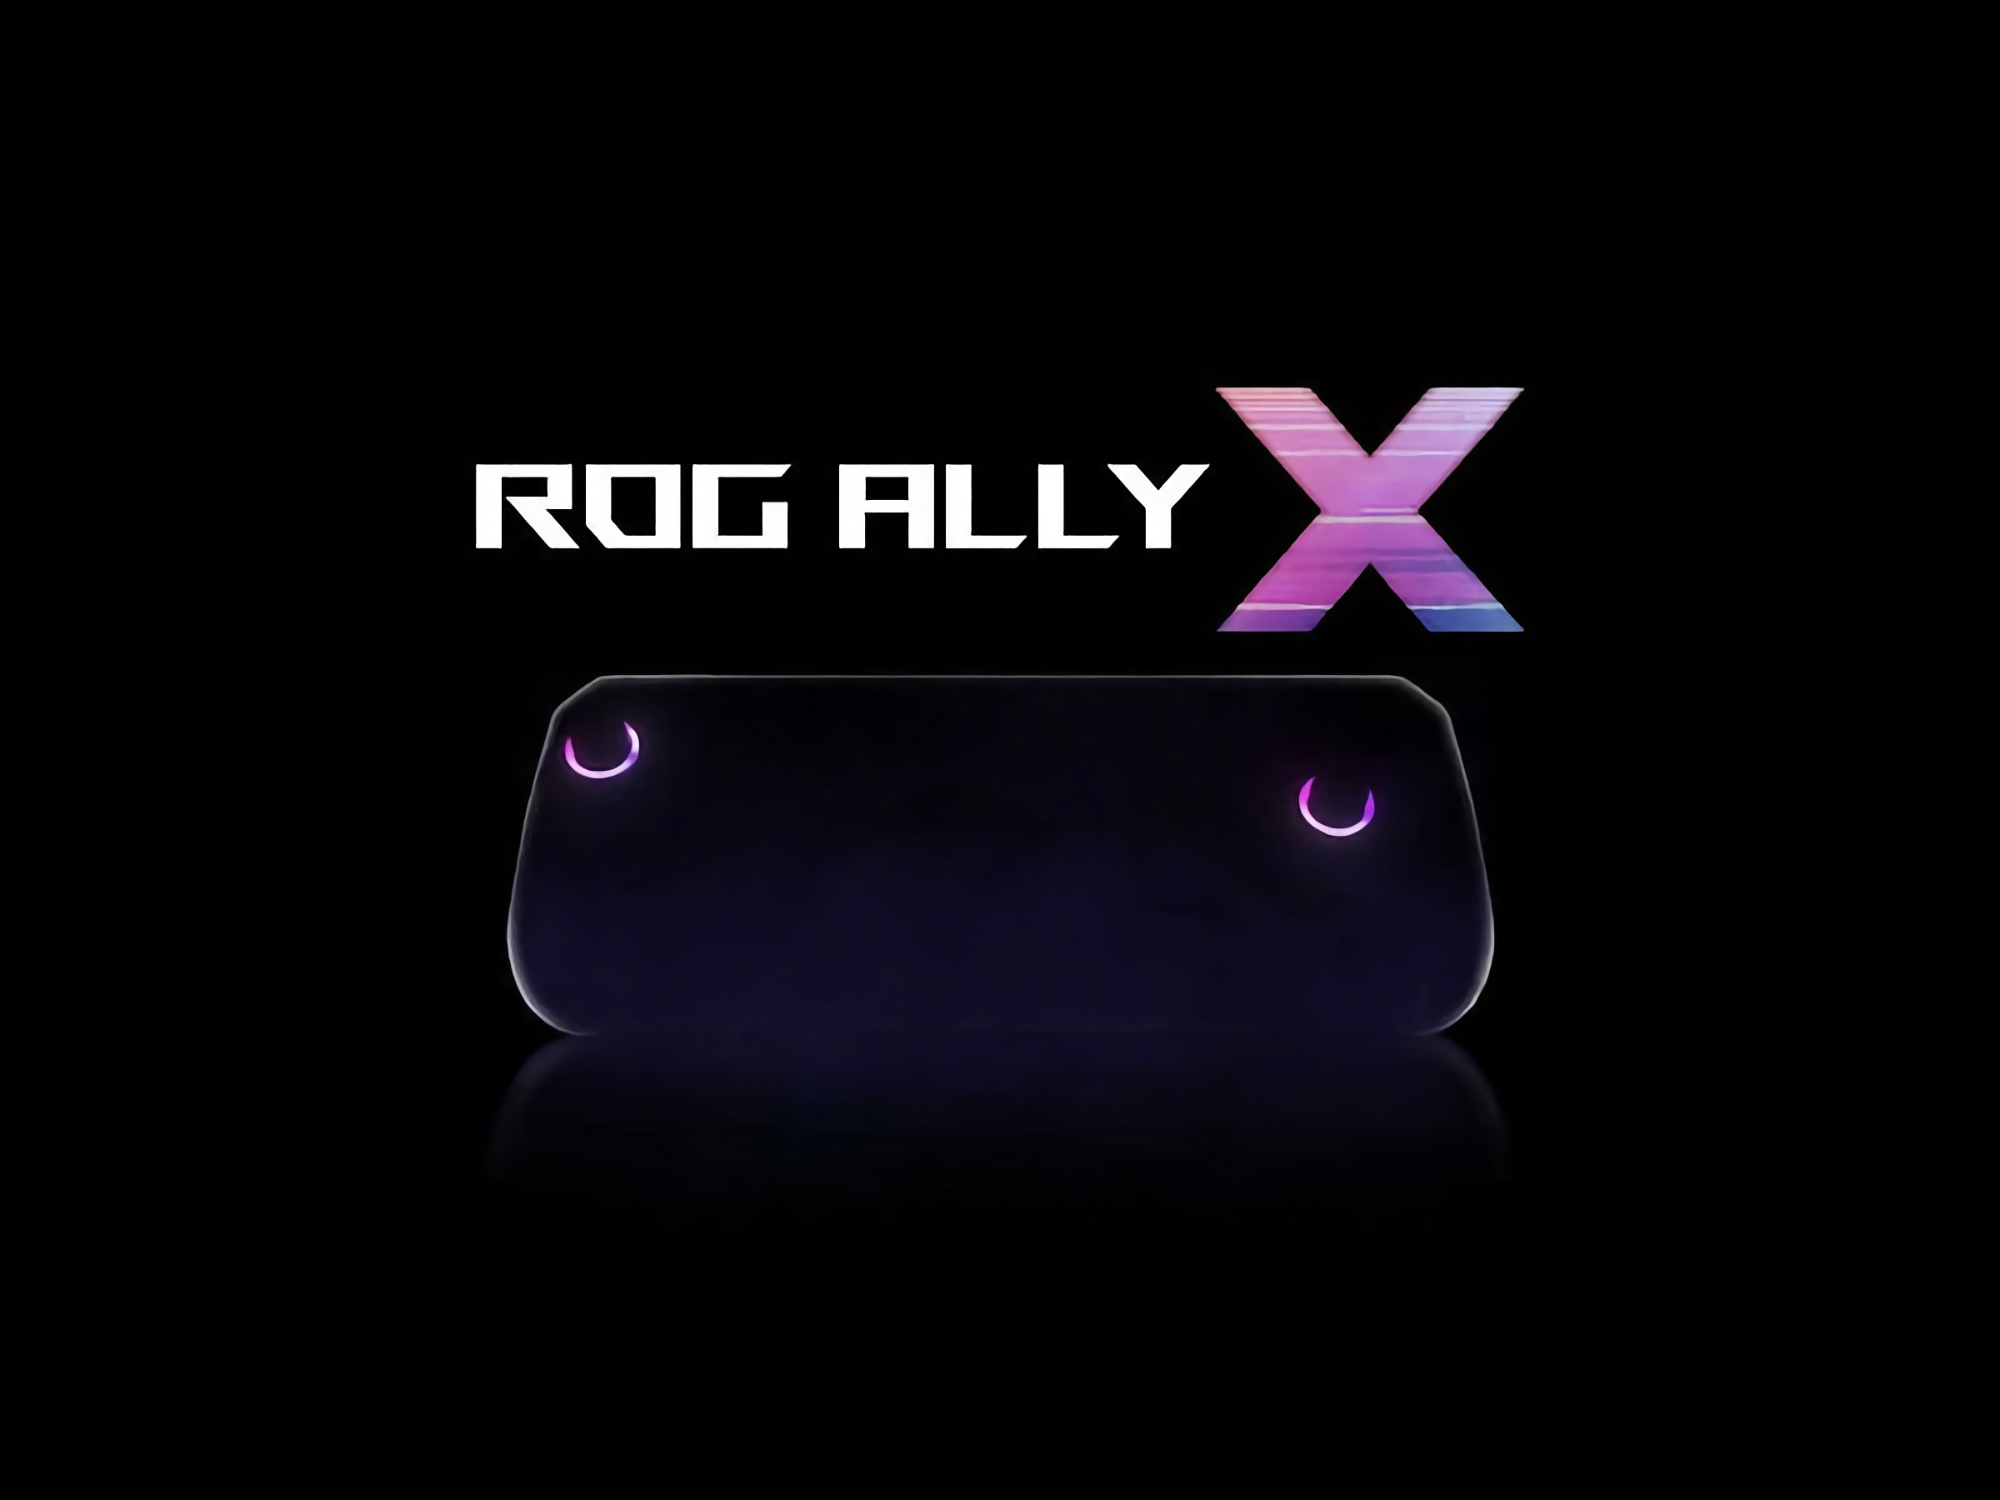 Trzy tygodnie przed premierą: specyfikacja i cena konsoli do gier ASUS ROG Ally X ujawnione online